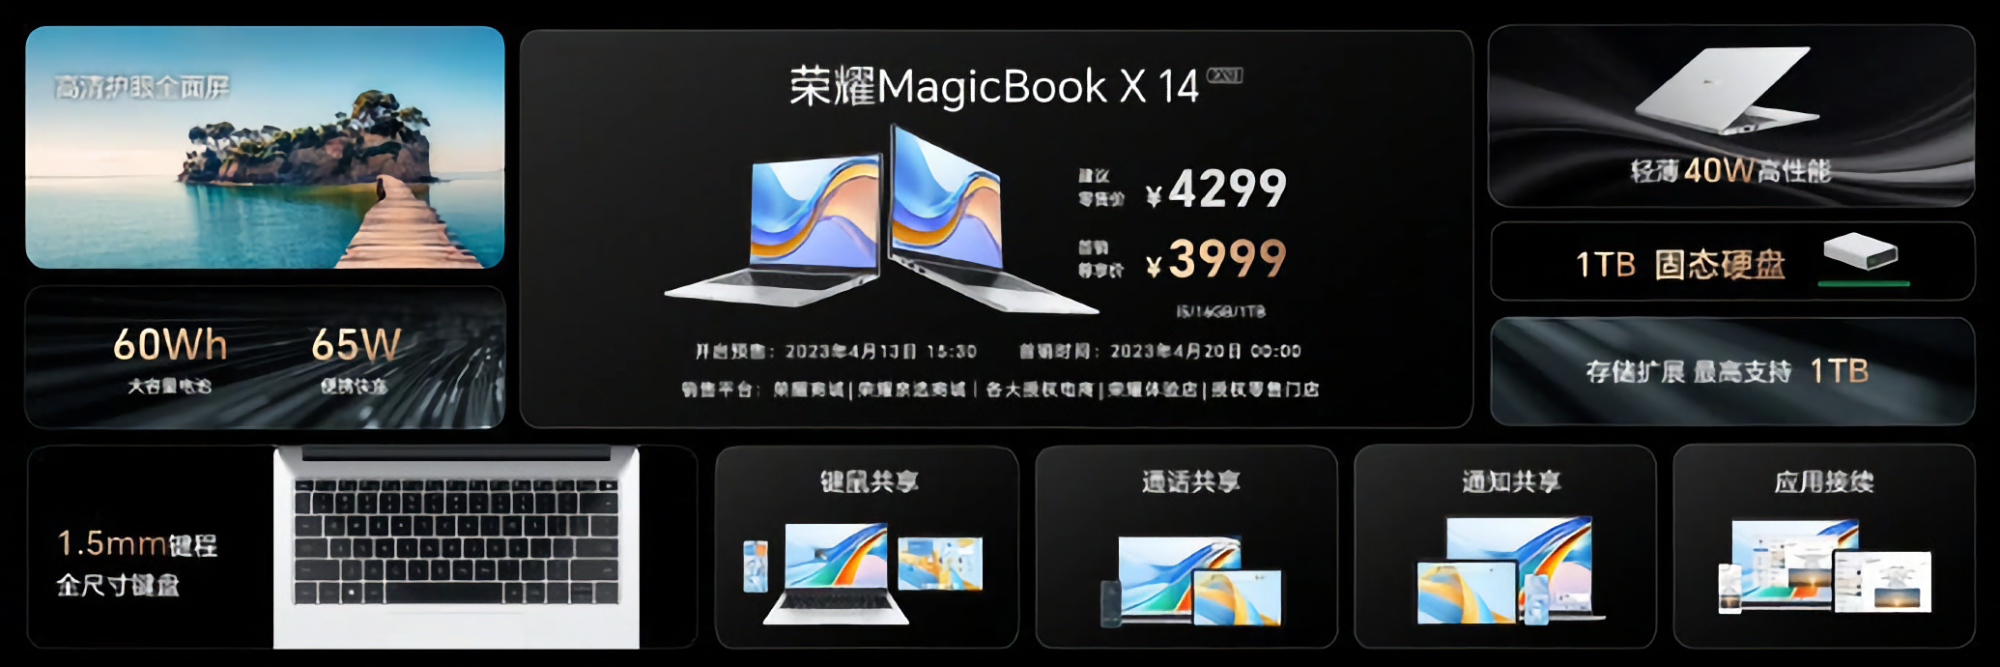 Magicbook x 14 2023